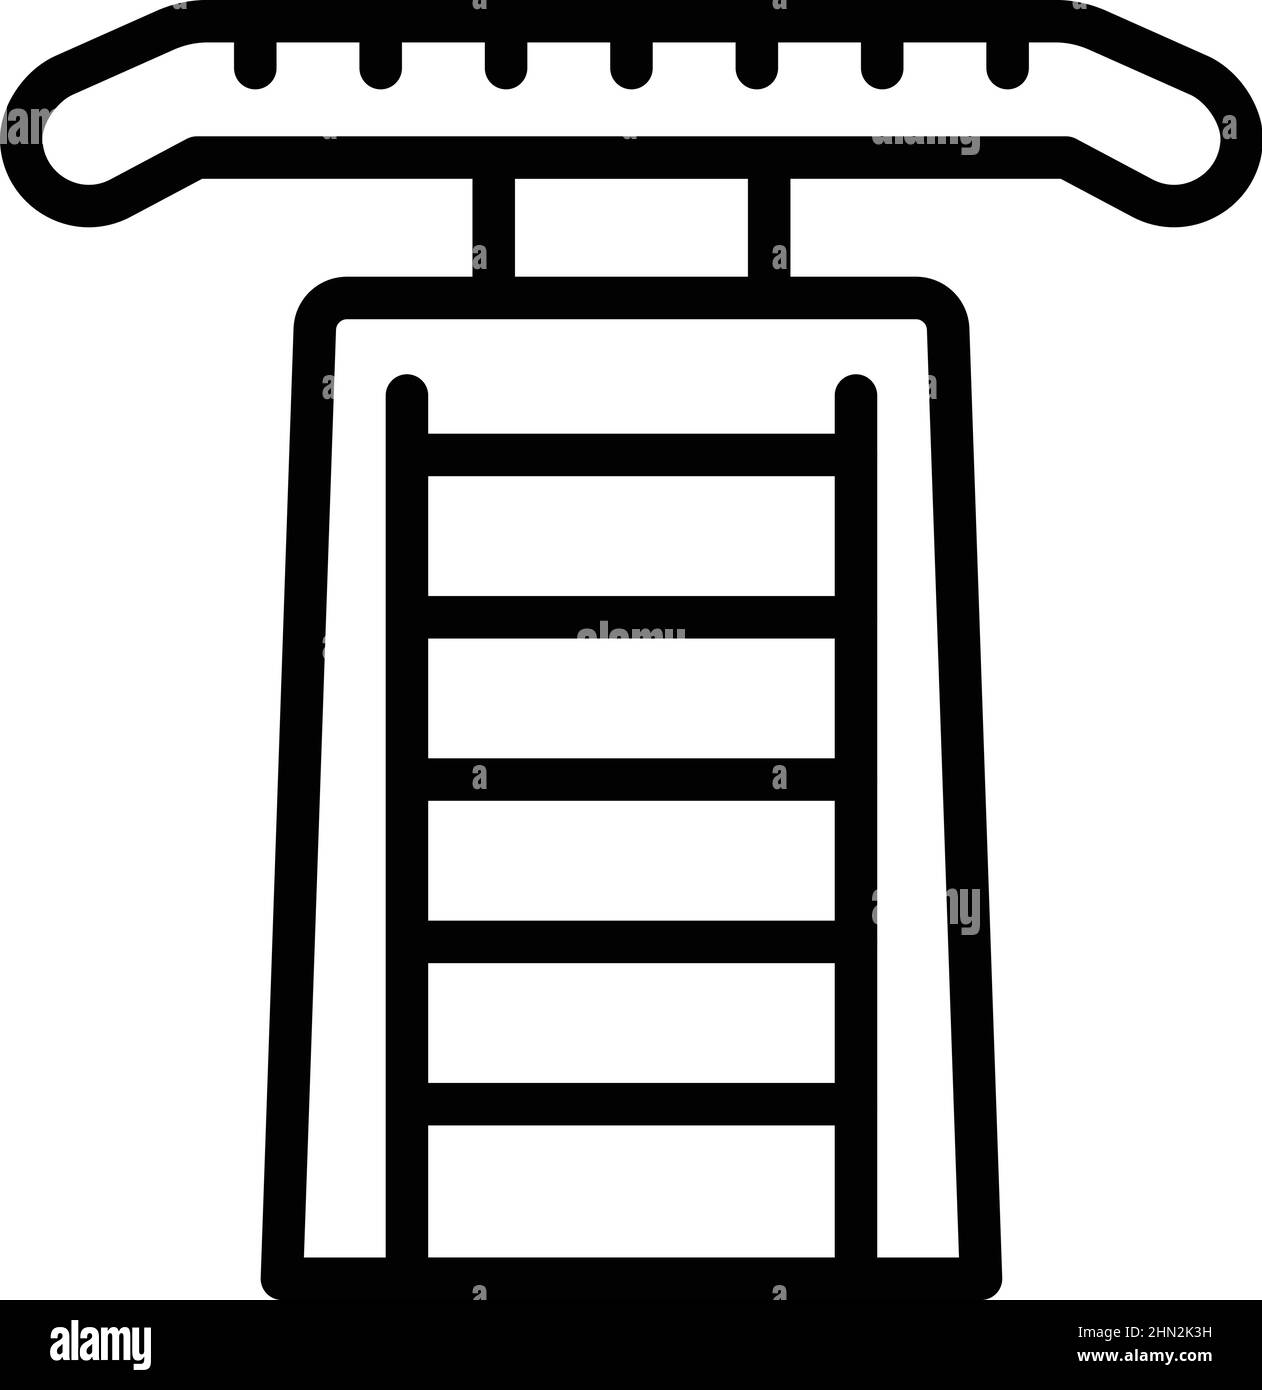 Vecteur de contour de l'icône de la barre horizontale Gym. Entraînement physique. Sport santé Illustration de Vecteur